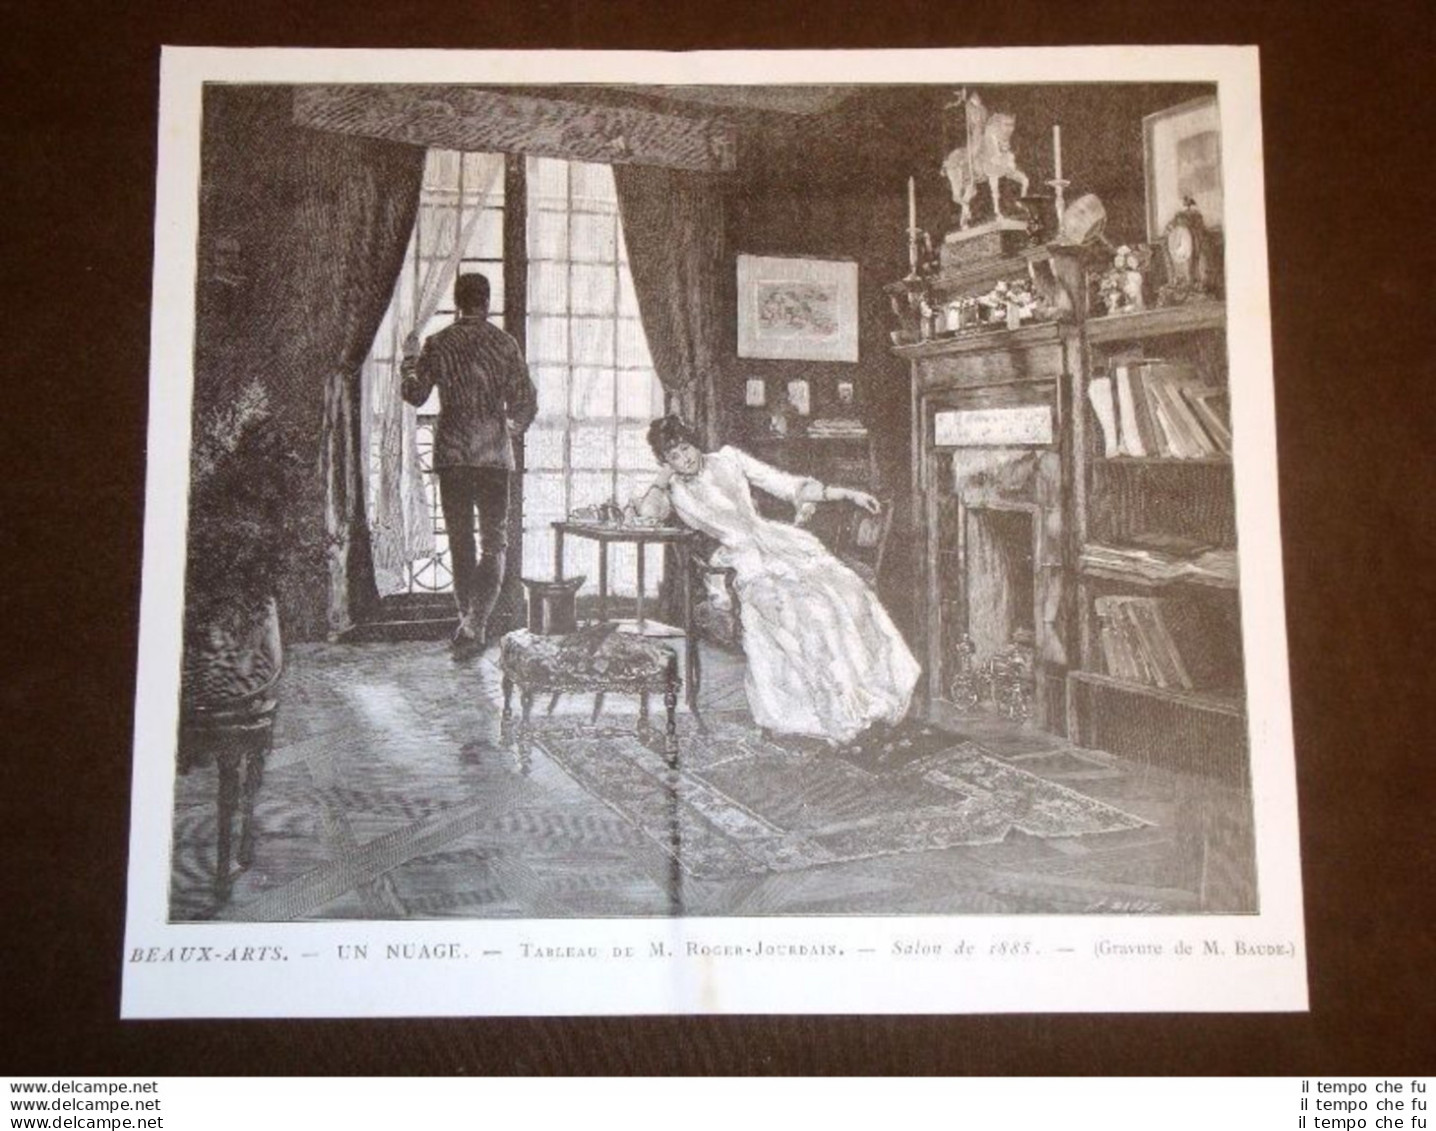 Un Nuage Tableau De M. Roger - Jourdain Salon De 1885 Gravure De M. Baude - Avant 1900